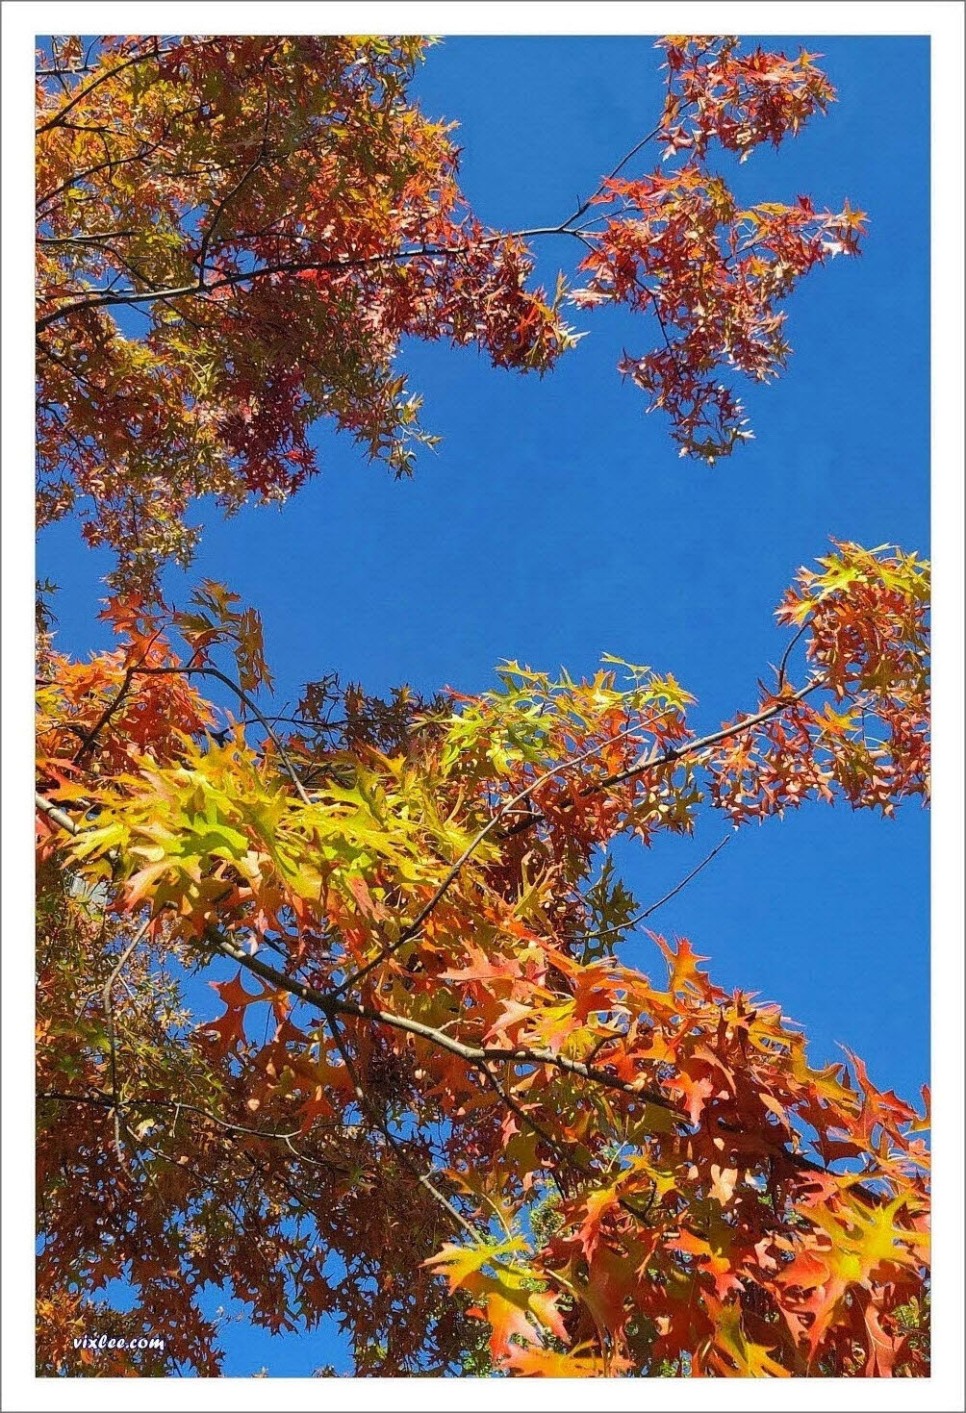 도심공원에도 가을 단풍이 담뿍 들었다.